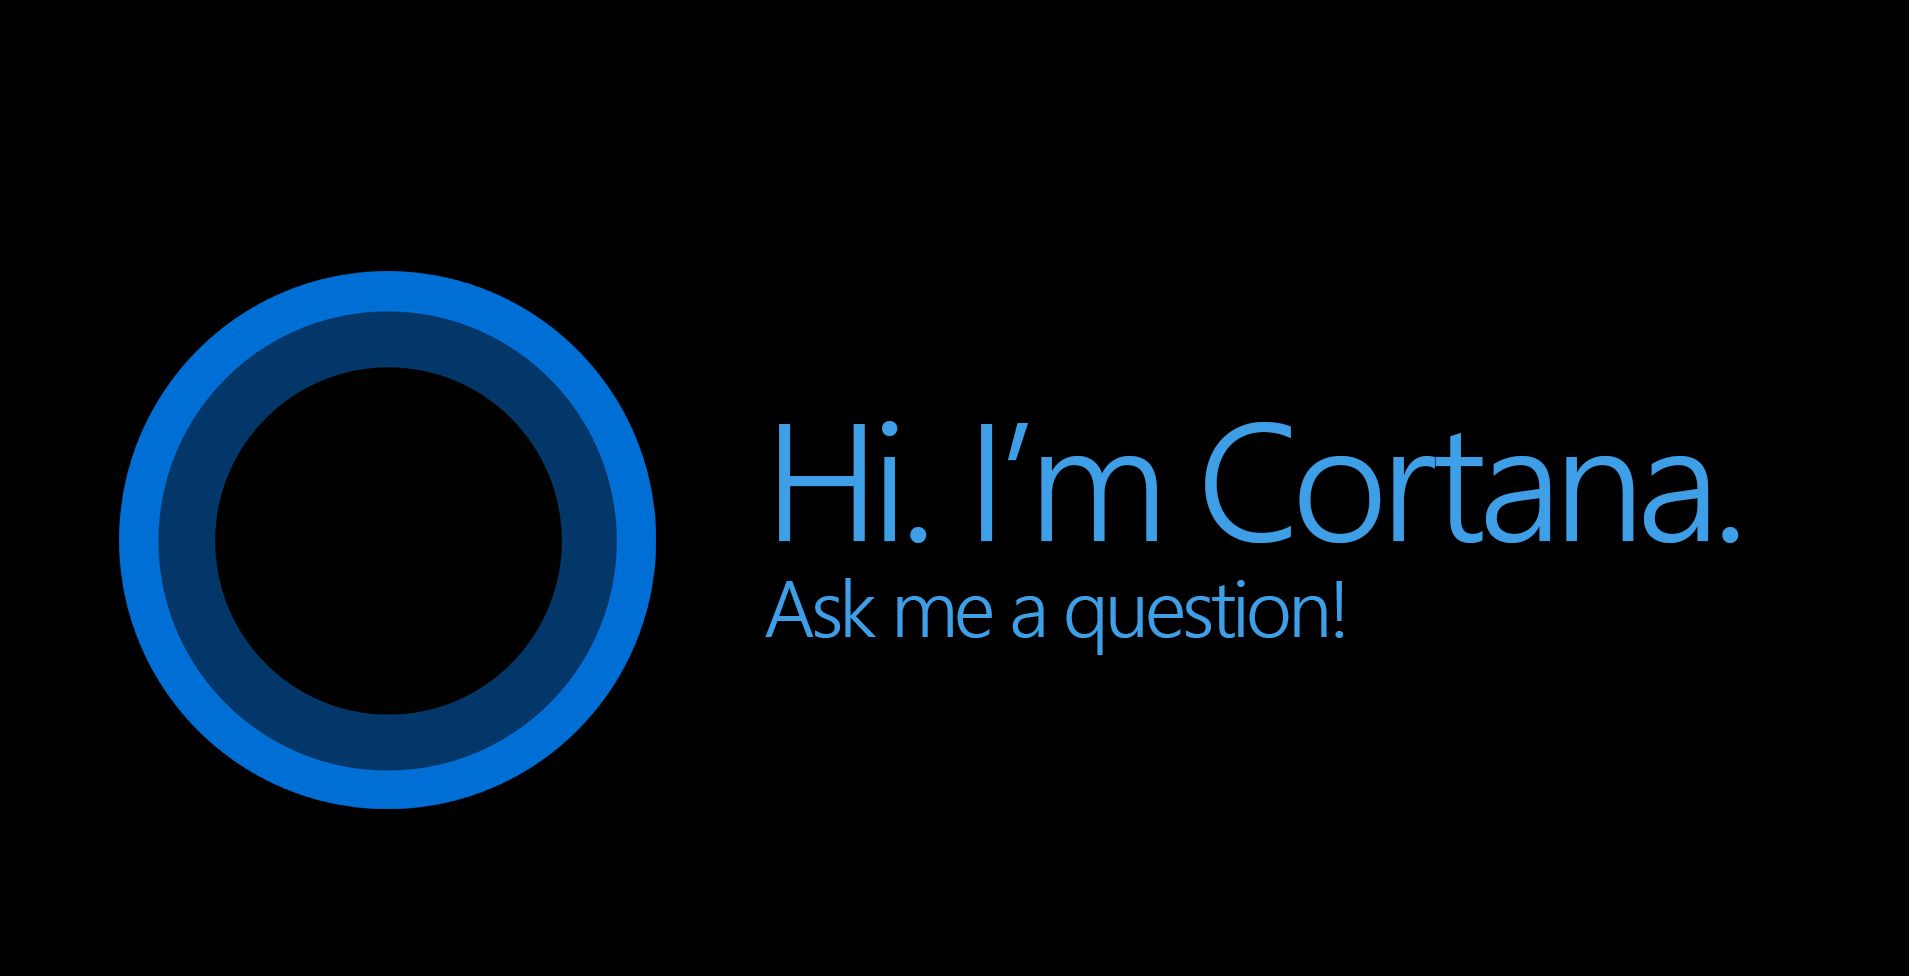 Windows 10 Cortana Nasıl Aktif Edilir? | Tekneloji.Net